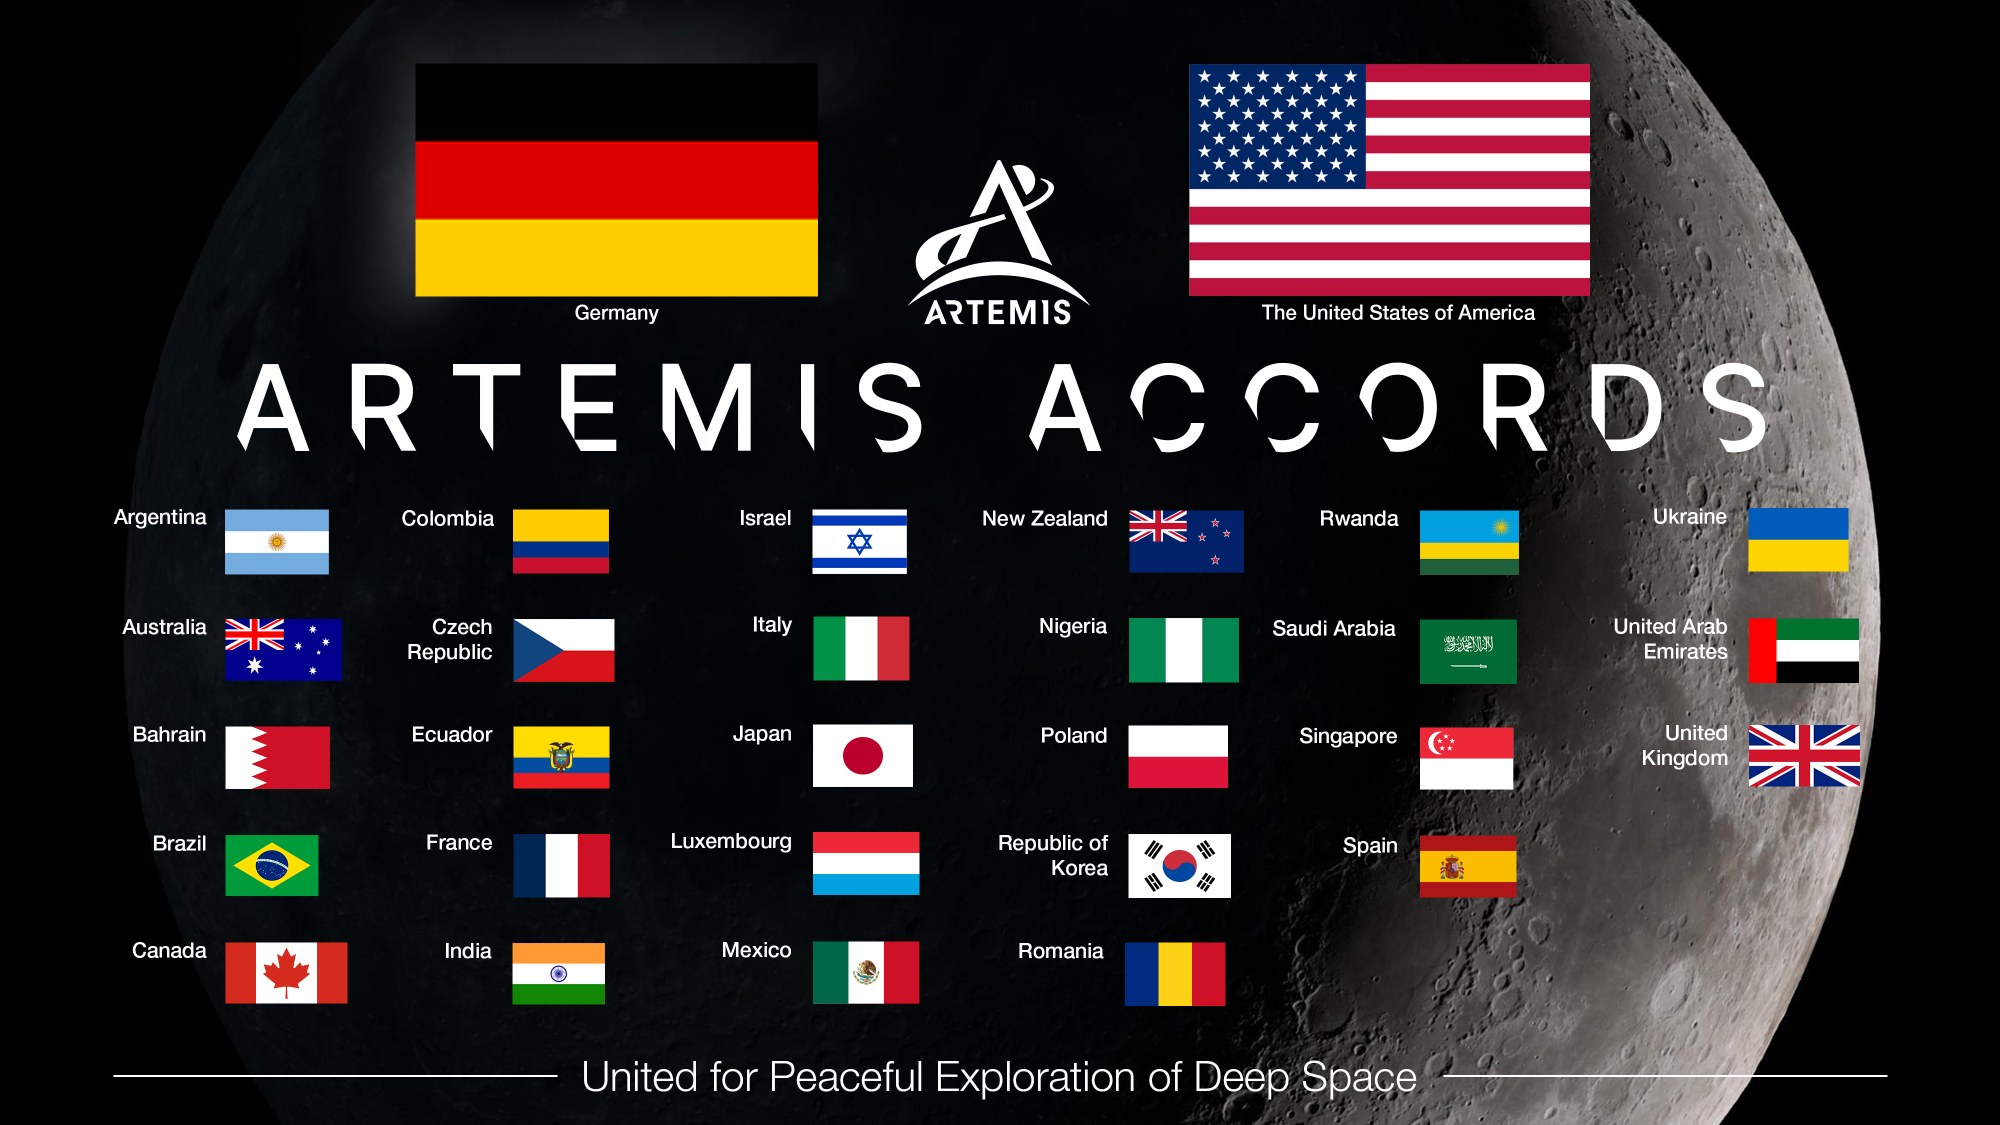 Die Artemis Accords zählen nun 29 Mitglieder